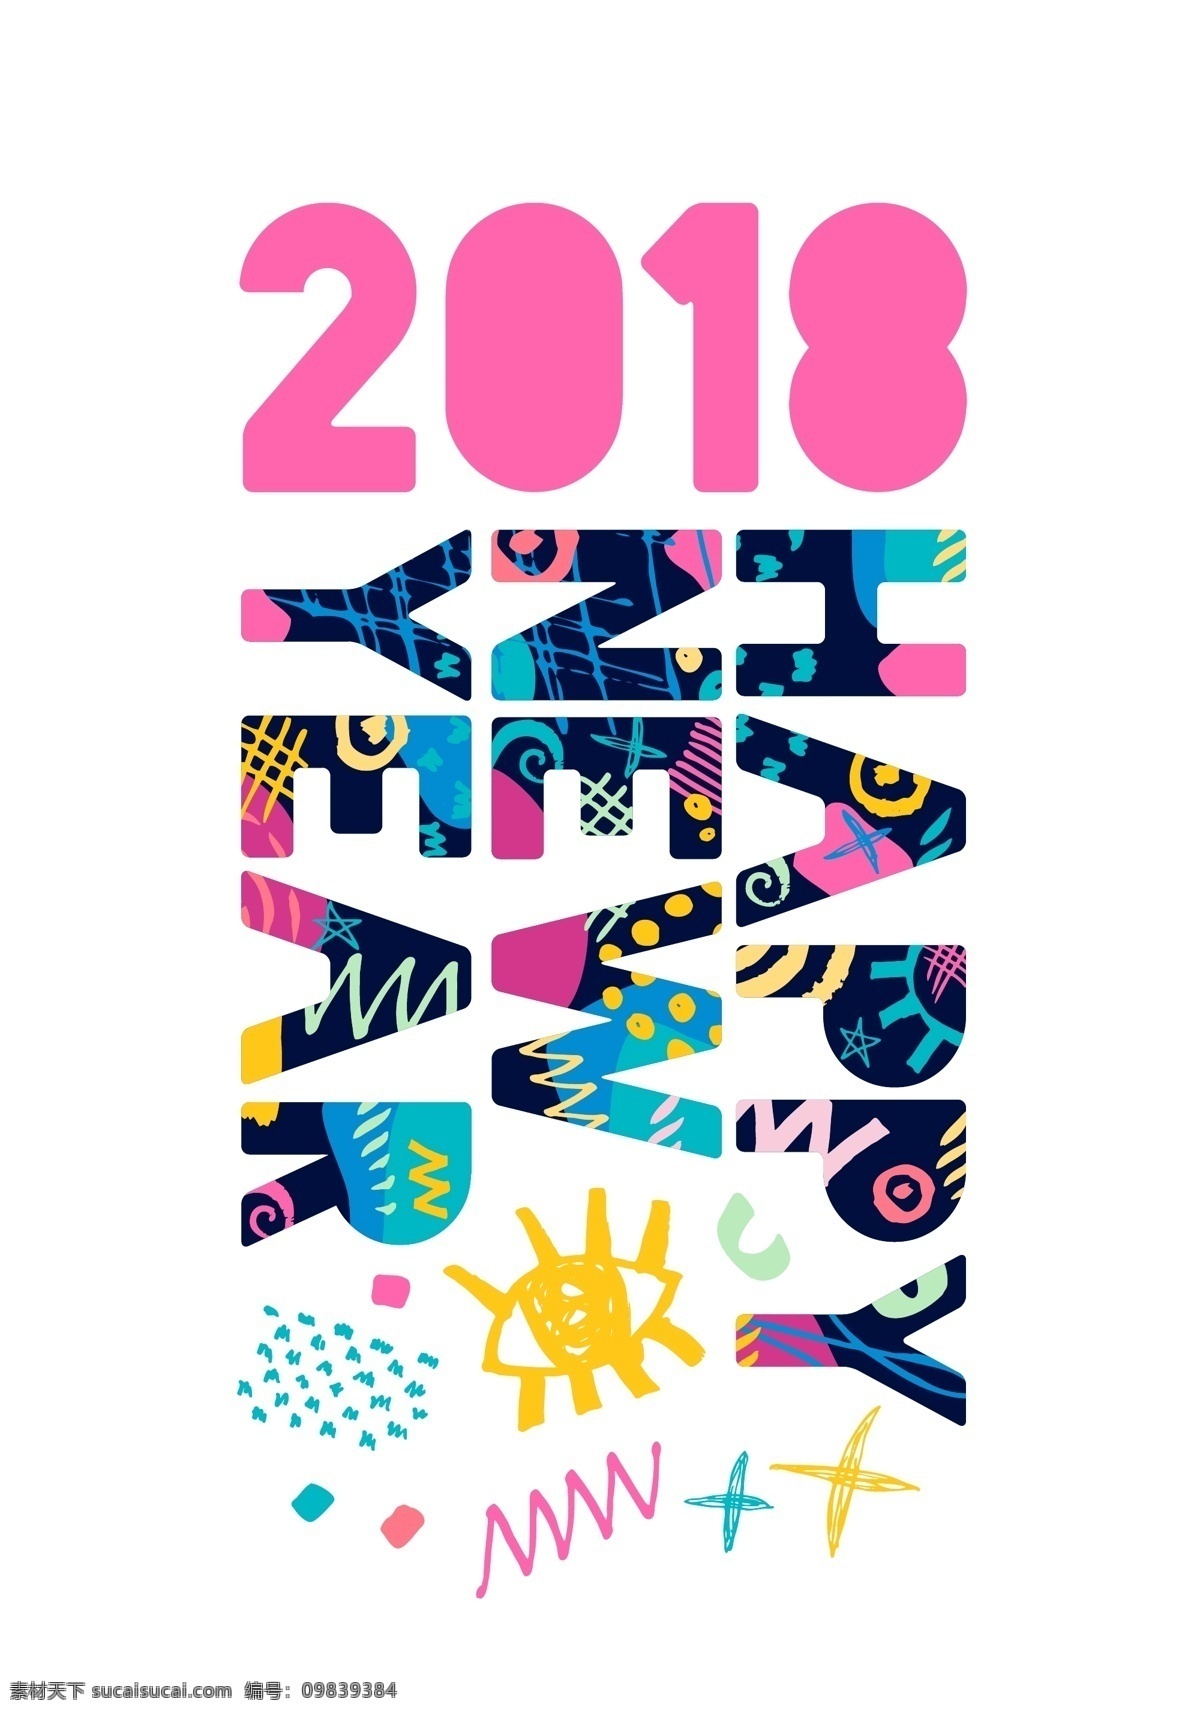 花纹 英文 2018 年 创意 文字 矢量 彩色 年份 平面素材 设计素材 矢量素材 新年 艺术 主题 字体